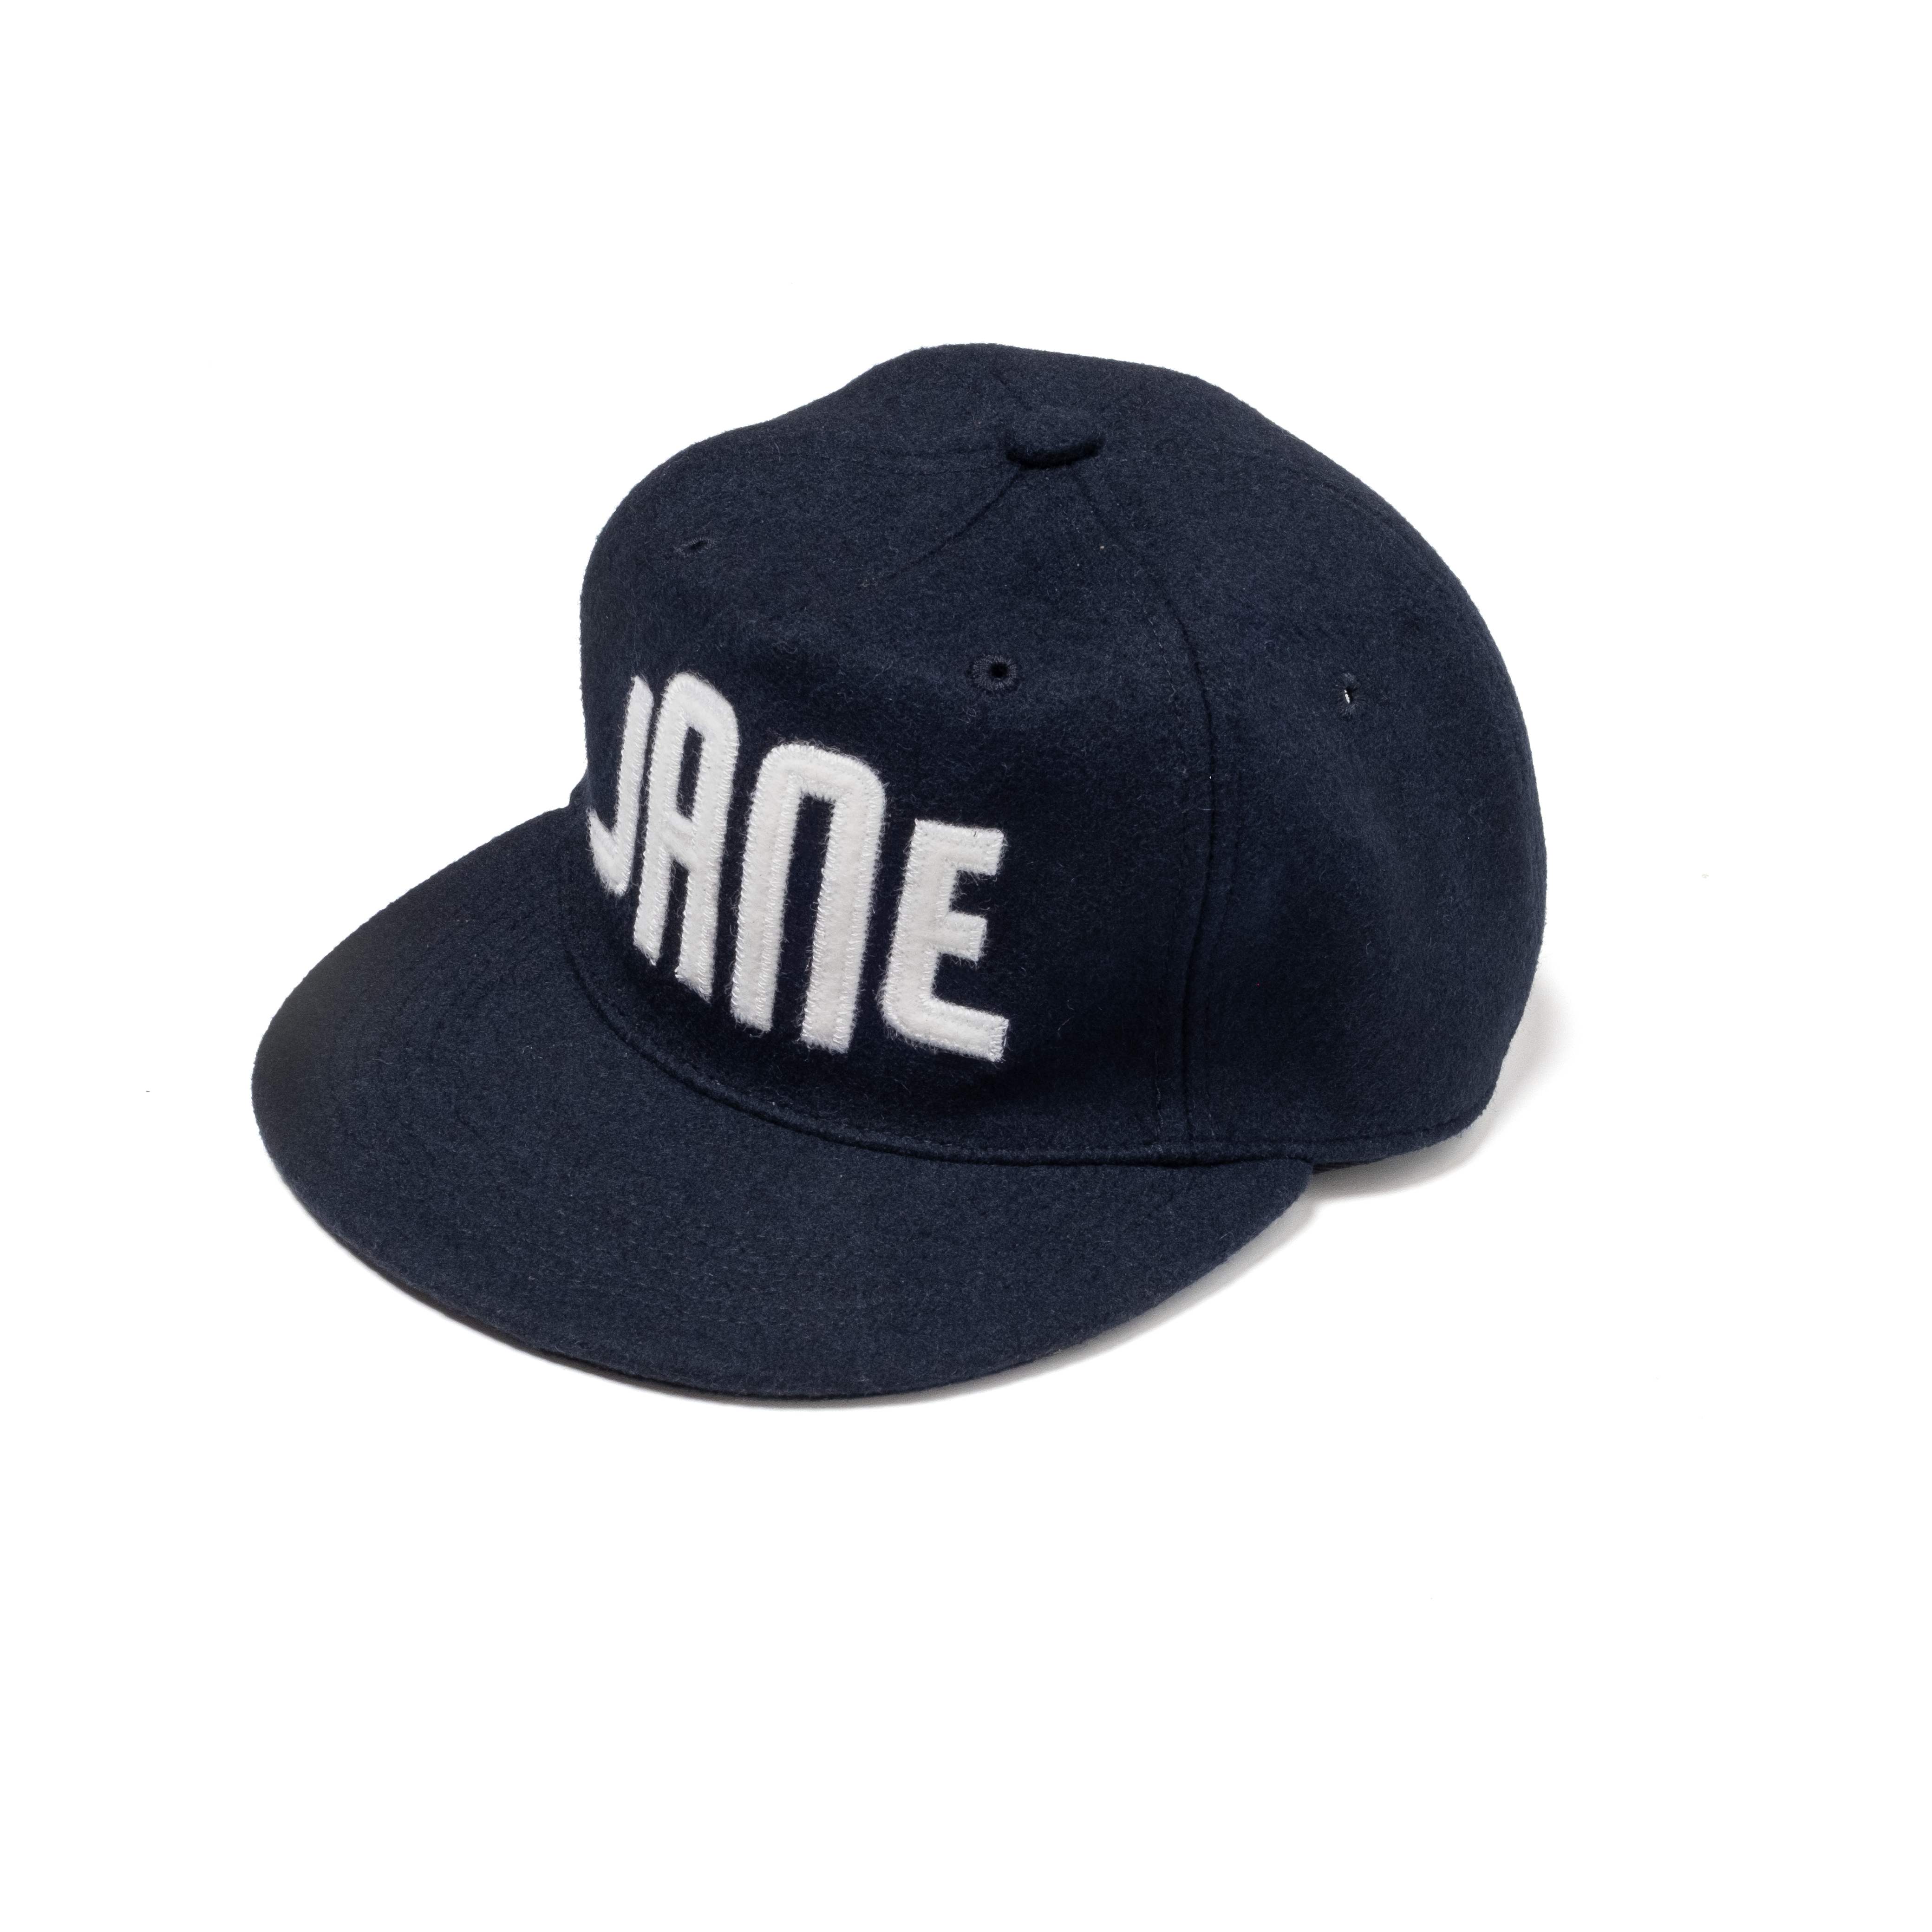 JANE Ballpark Hat - Unstructured - Navy/White